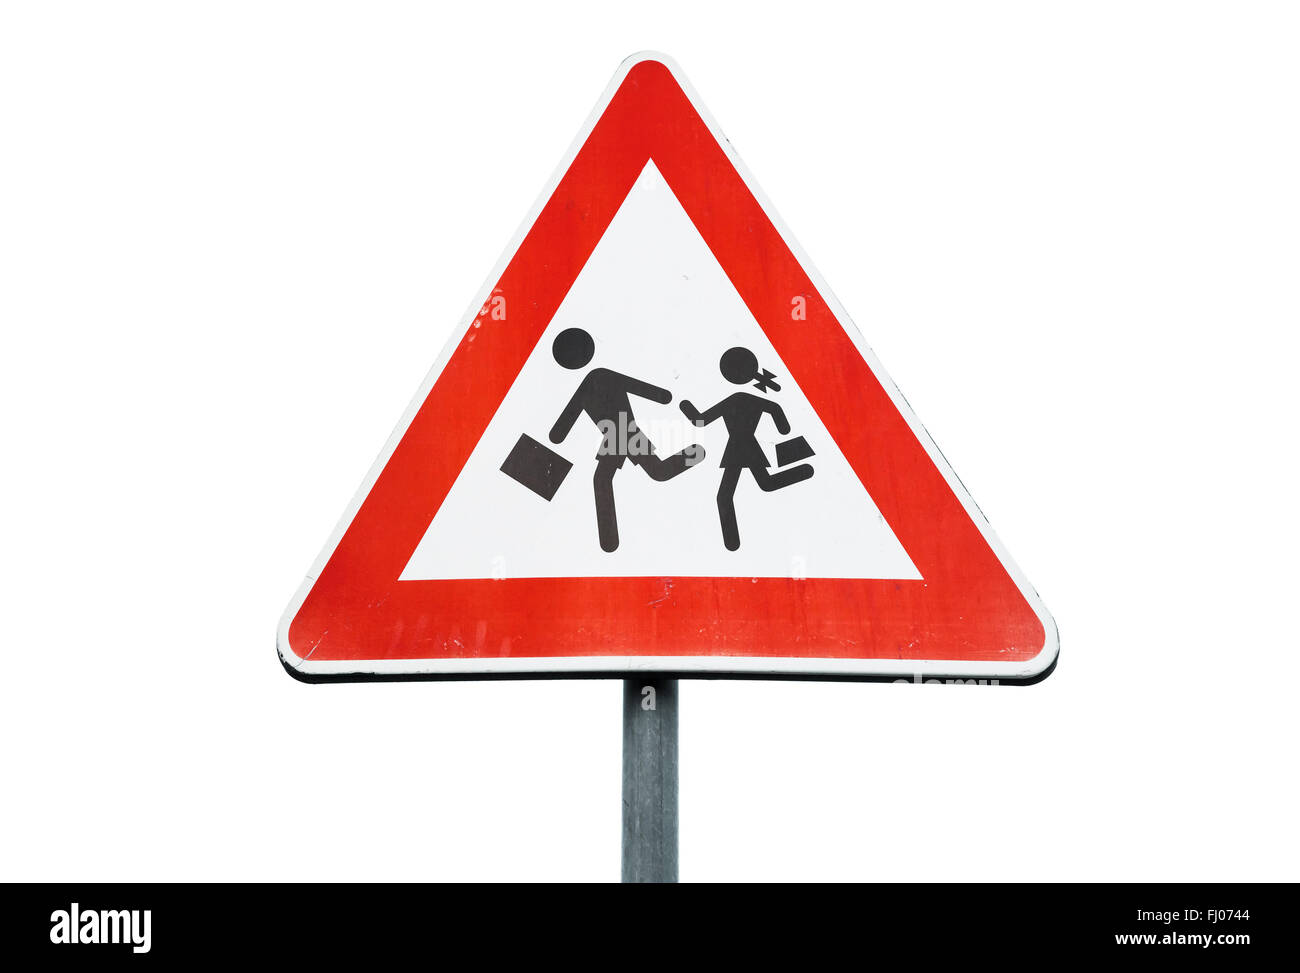 Verkehrszeichen Achtung Kinder Straßenschild Schild Vorsicht Kind Verkehrsschild 